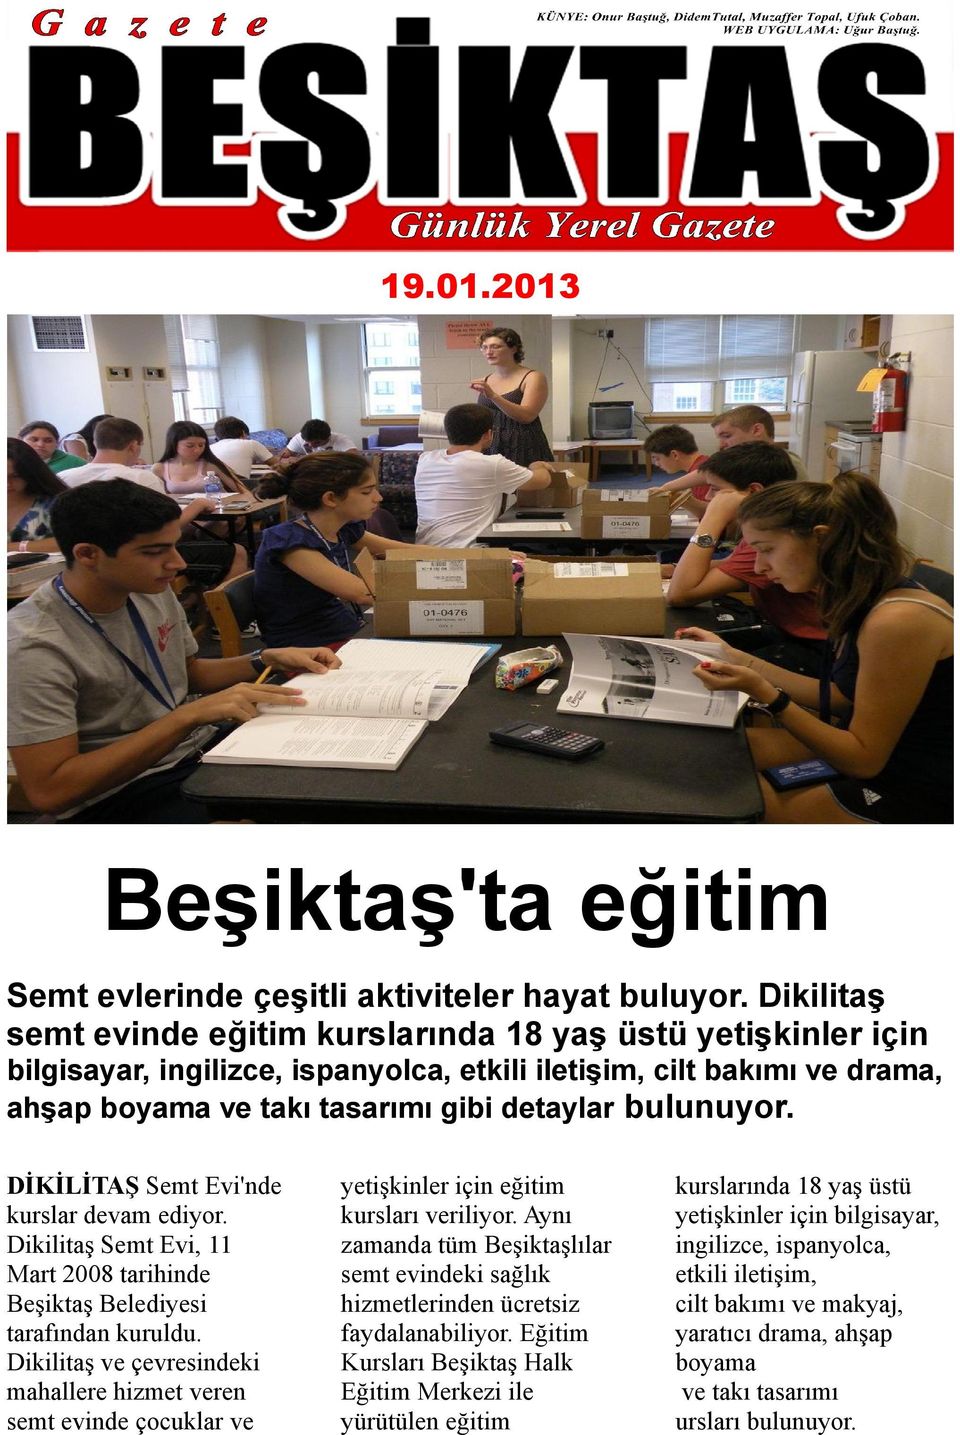 DİKİLİTAŞ Semt Evi'nde kurslar devam ediyor. Dikilitaş Semt Evi, 11 Mart 2008 tarihinde Beşiktaş Belediyesi tarafından kuruldu.